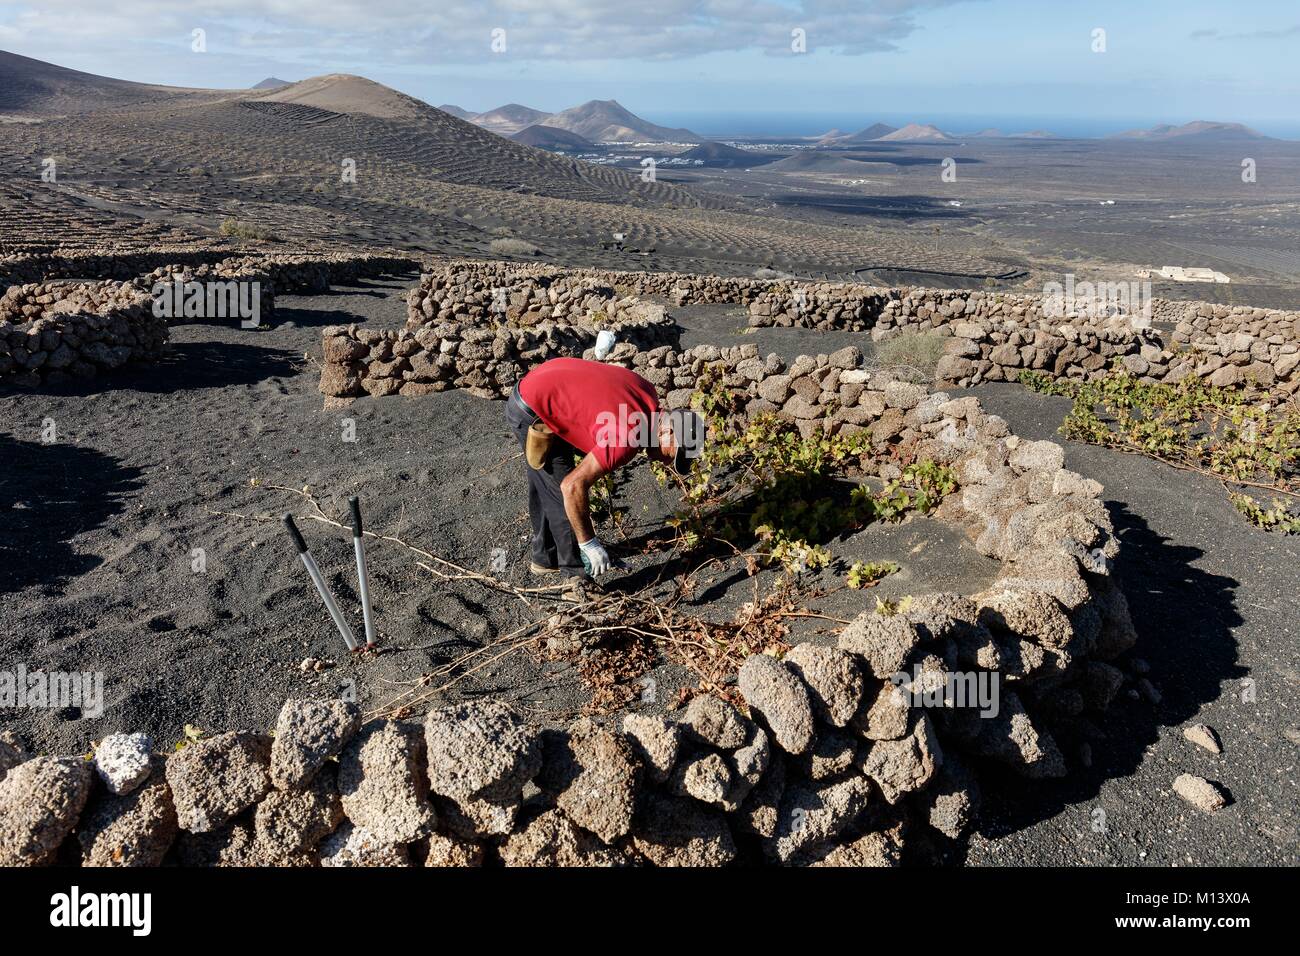 Spagna Isole Canarie Lanzarote Island, La Geria, potatura vinegrower vite protetto da stone pareti basse in lapilli (sabbia vulcanica) prima di vulcani Foto Stock